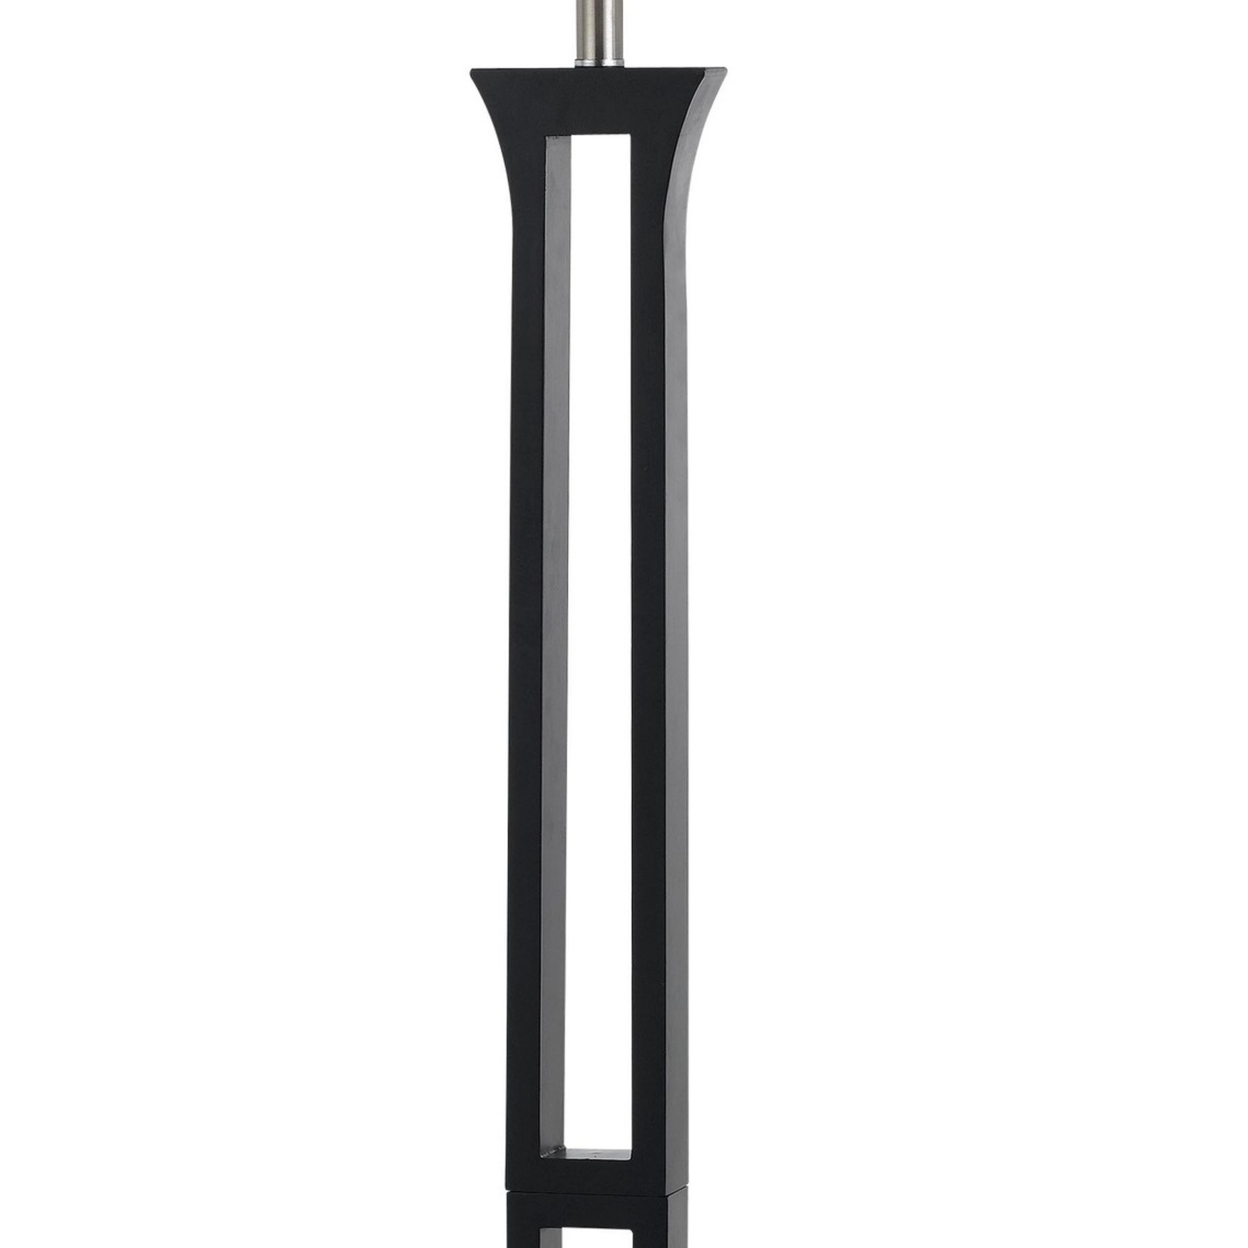 100 Watt Metal Body Floor Lamp With Square Fabric Shade, Black And White- Saltoro Sherpi